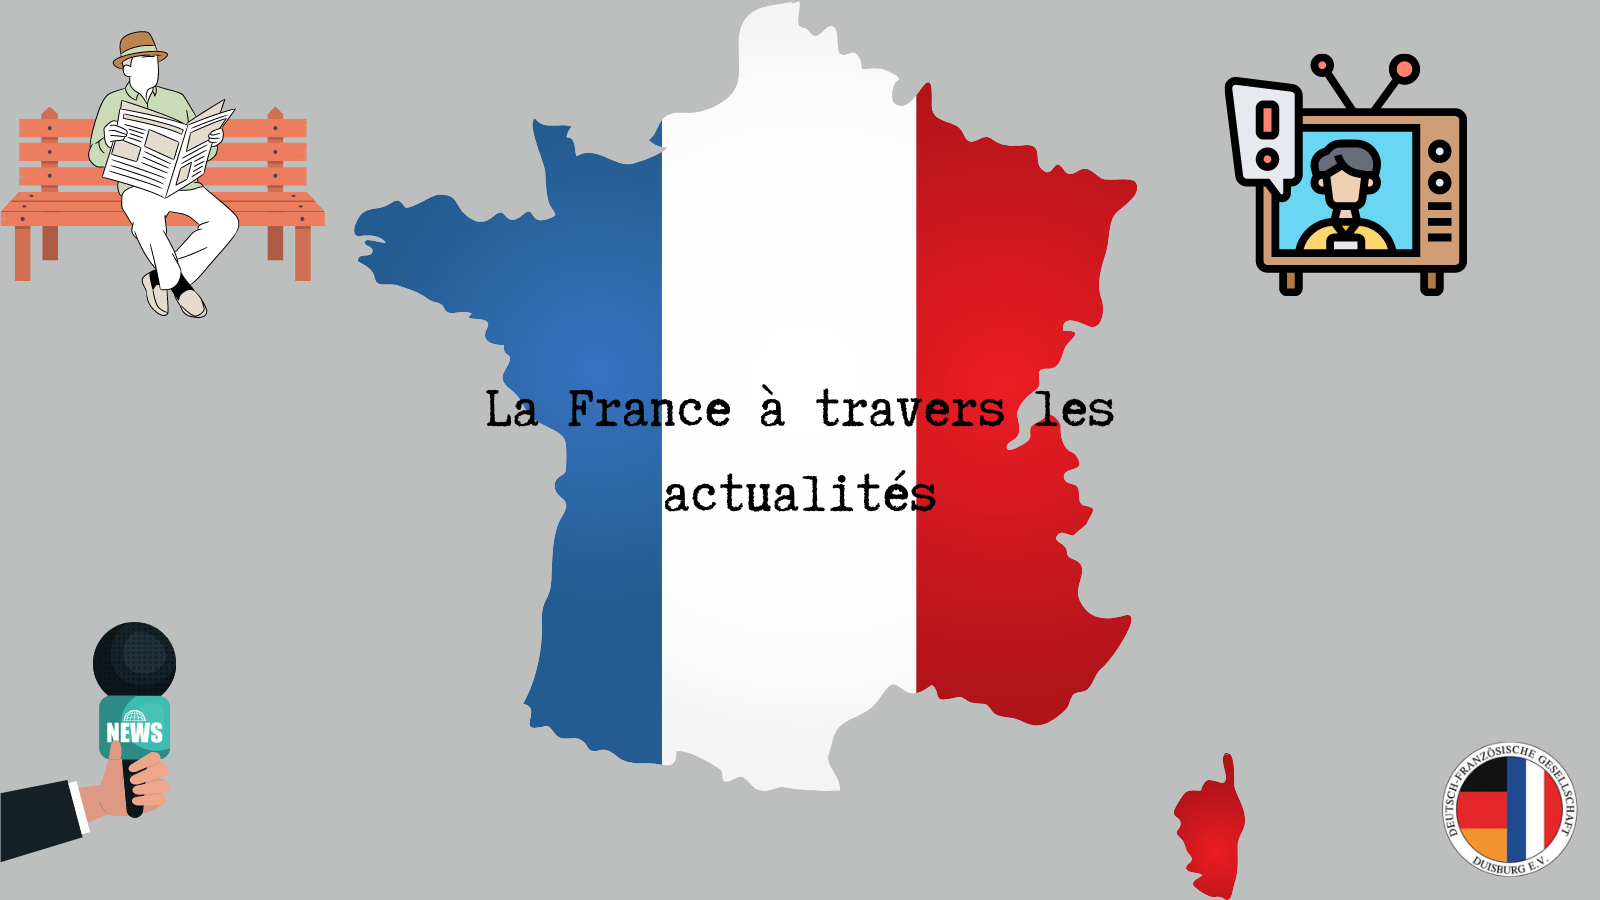 La France à travers les actualités